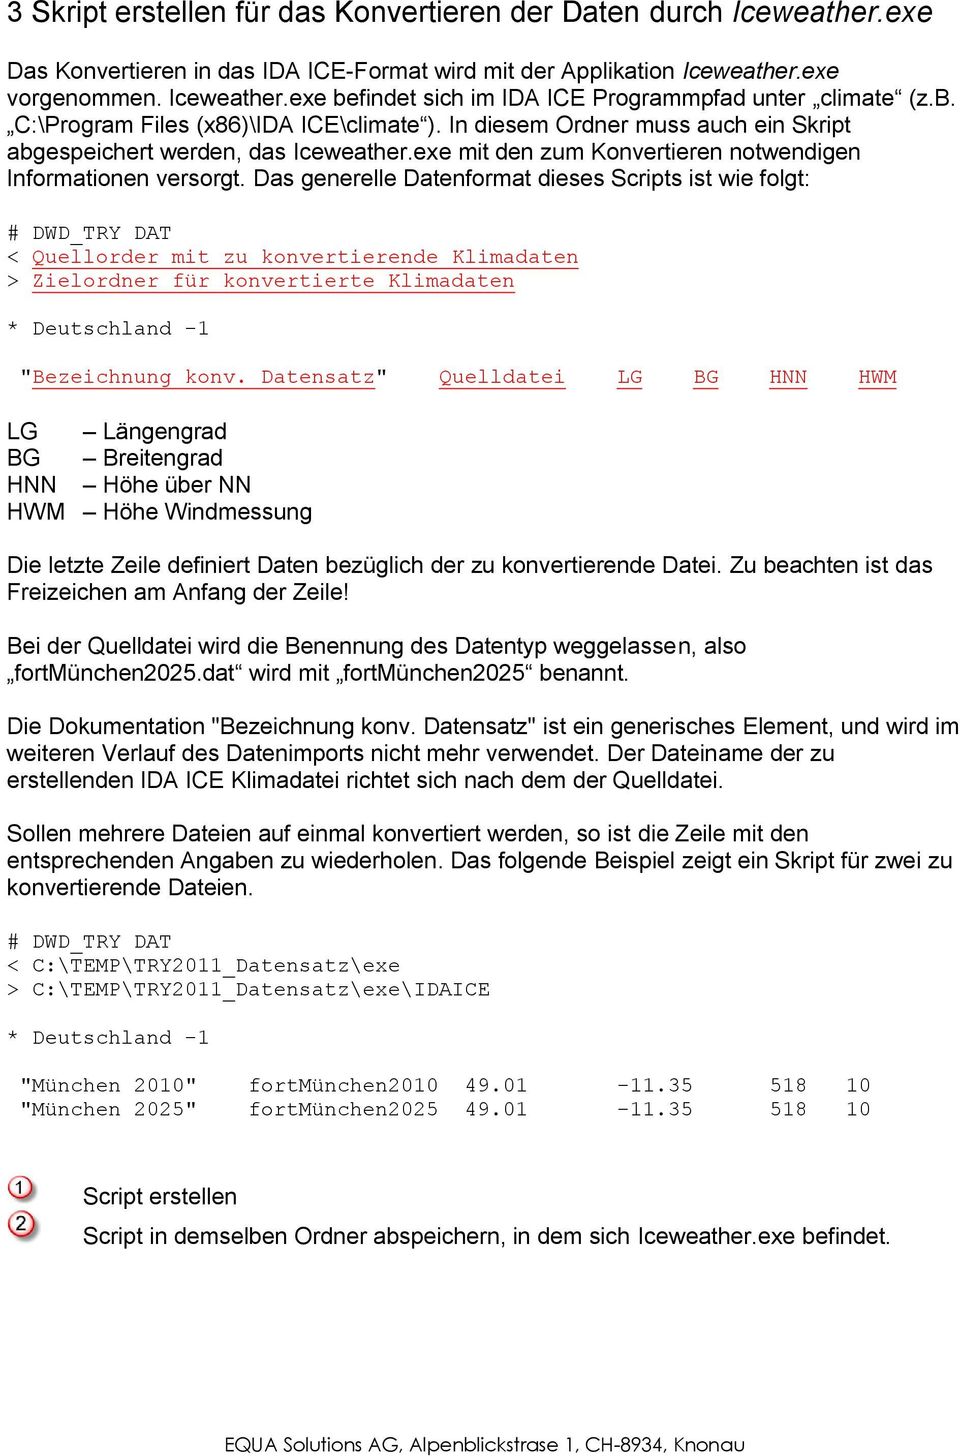 Das generelle Datenformat dieses Scripts ist wie folgt: # DWD_TRY DAT < Quellorder mit zu konvertierende Klimadaten > Zielordner für konvertierte Klimadaten * Deutschland -1 "Bezeichnung konv.